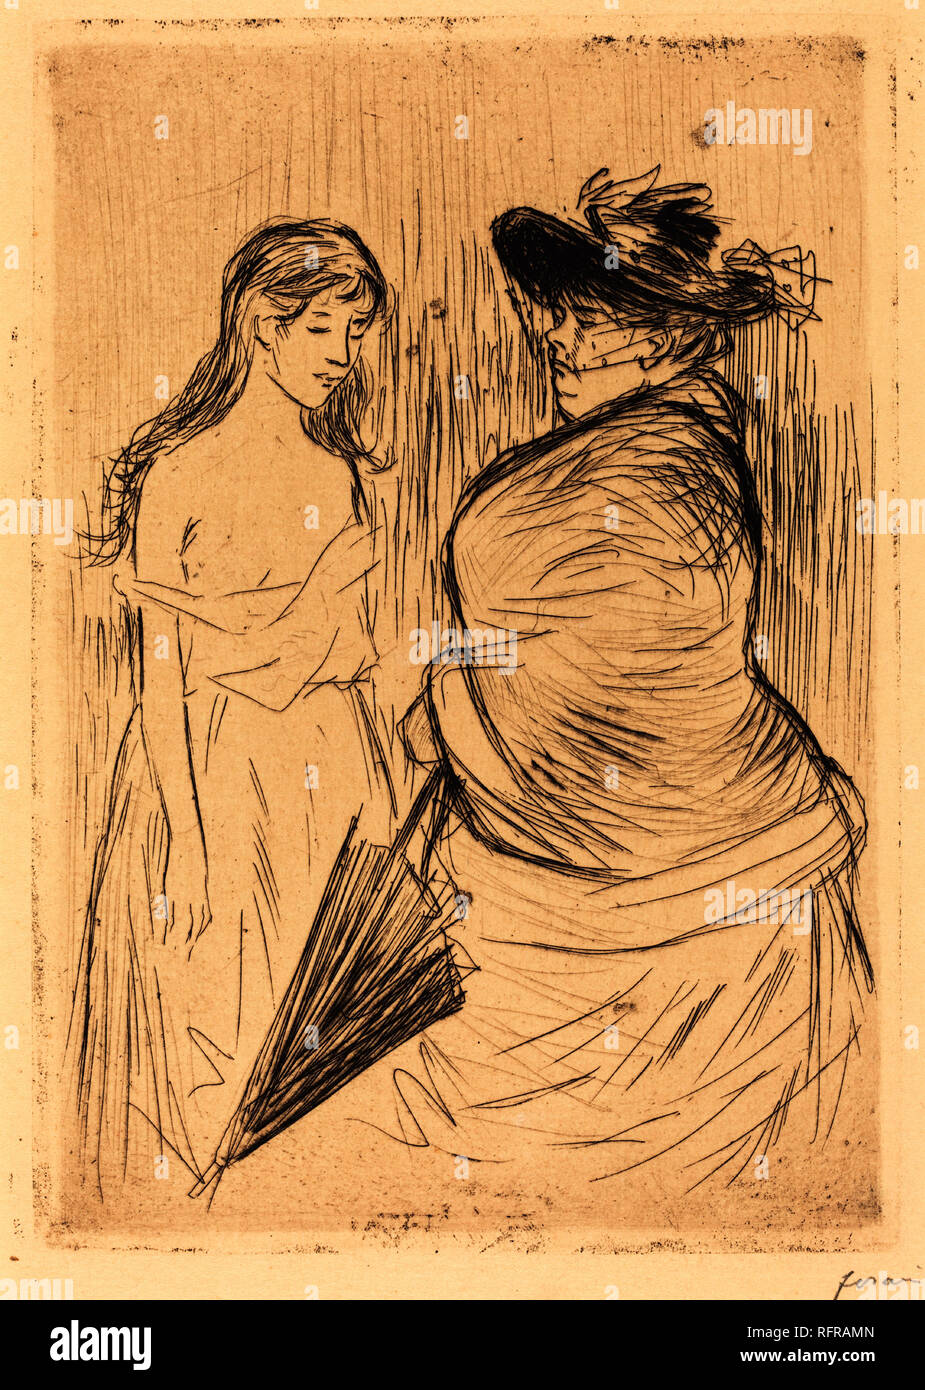 La traite des blanches. En date du : 1886. Technique : gravure. Musée : National Gallery of Art, Washington DC. Auteur : forain, JEAN LOUIS. Banque D'Images